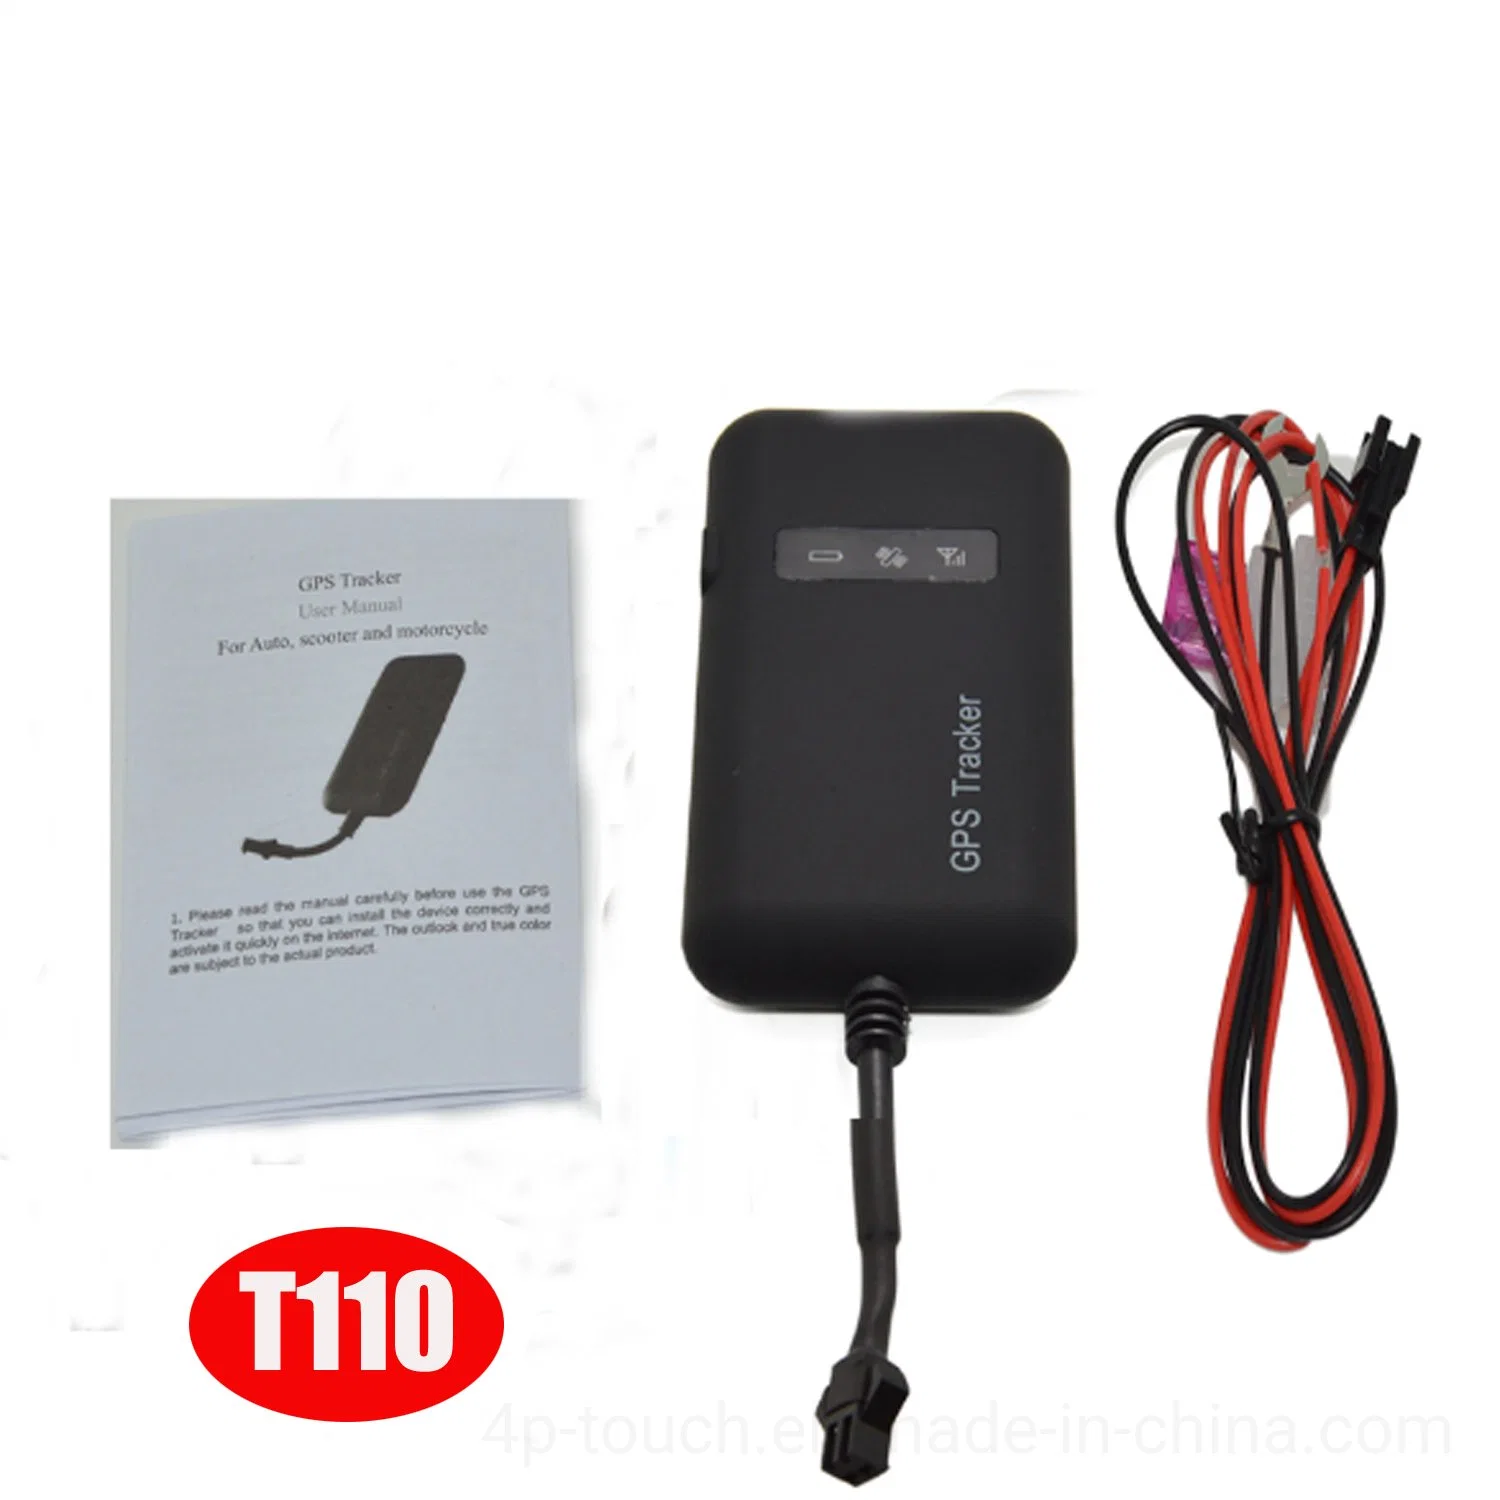 La vente de la Chine usine chaud 2G GSM de la sécurité automobile Moto Vélo Mini GPS du véhicule Tracker pour voiture avec télécommande couper le moteur T110